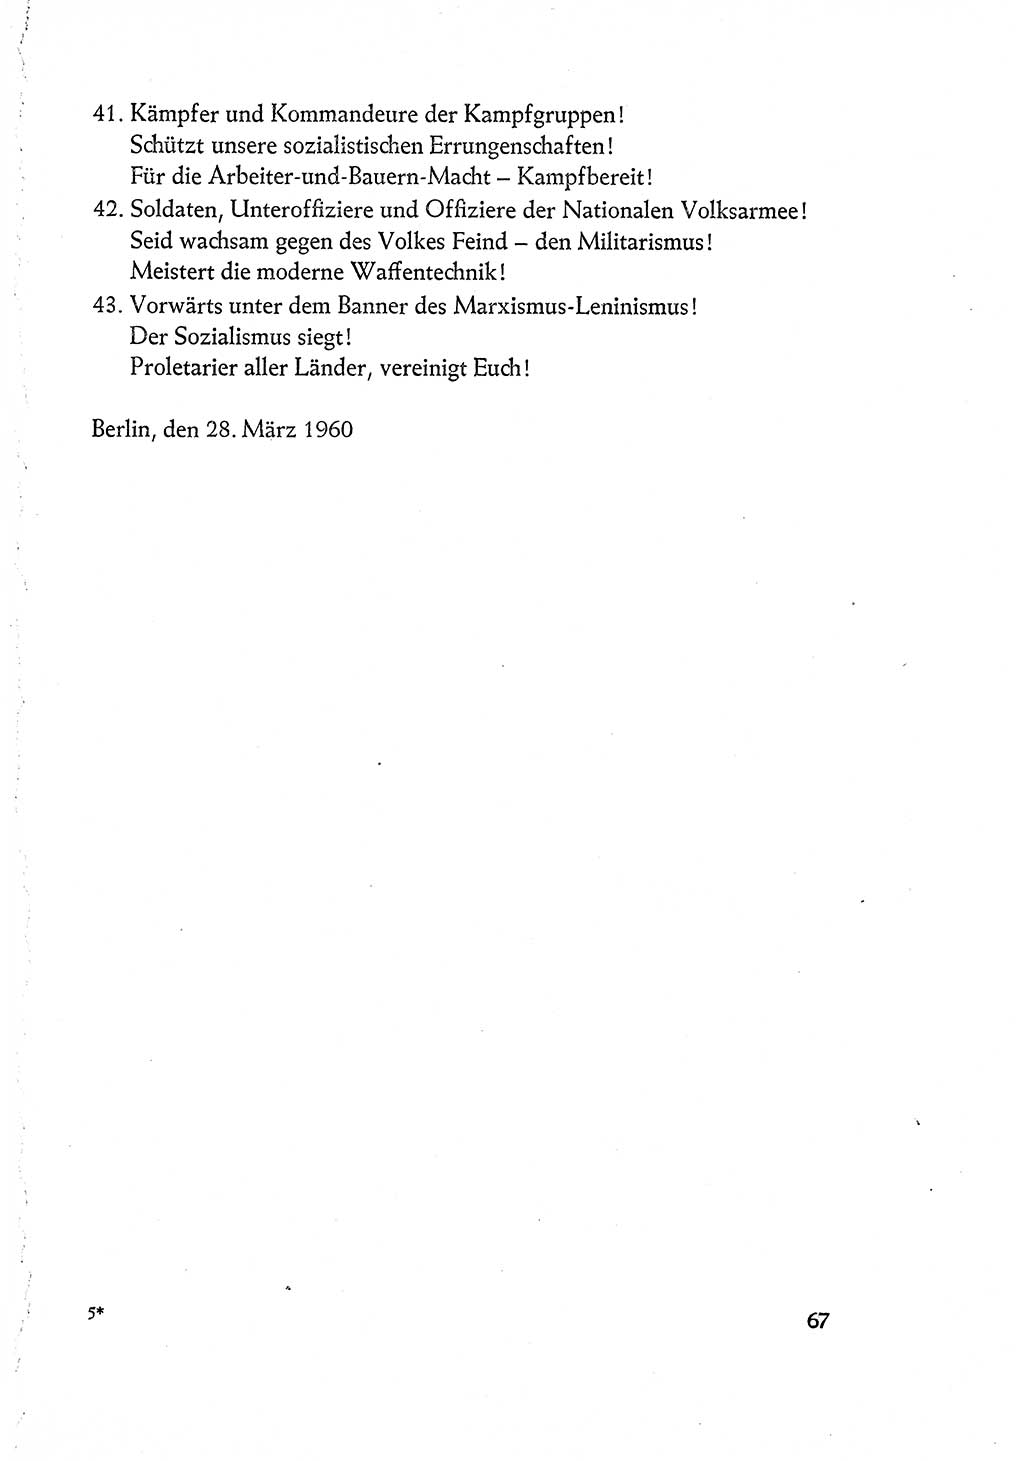 Dokumente der Sozialistischen Einheitspartei Deutschlands (SED) [Deutsche Demokratische Republik (DDR)] 1960-1961, Seite 67 (Dok. SED DDR 1960-1961, S. 67)